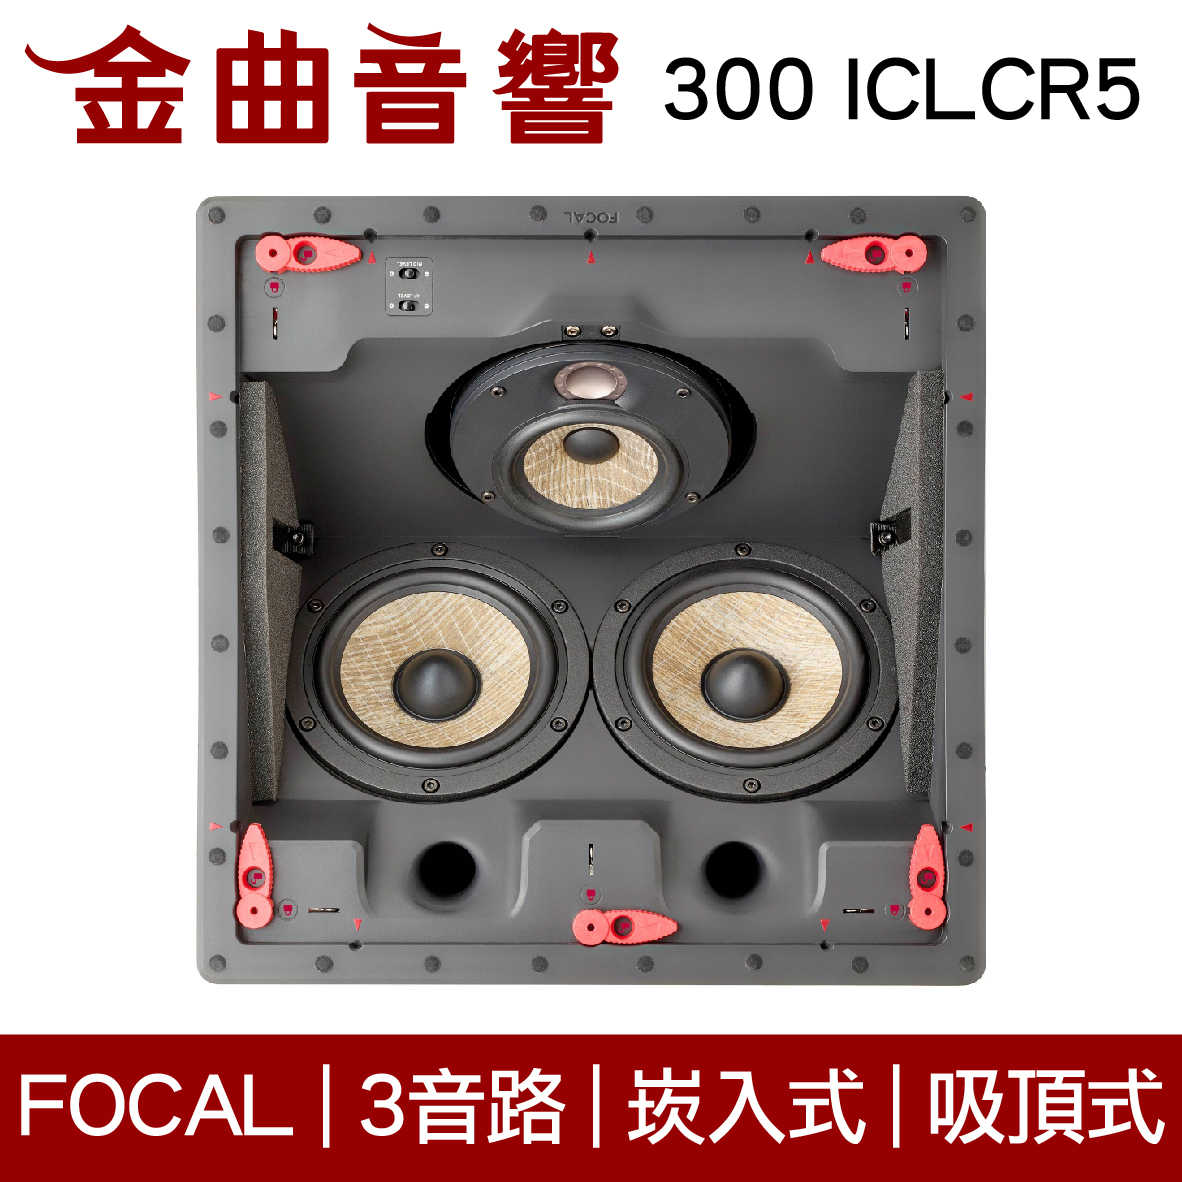 FOCAL 1000 ICLCR5 3音路 崁入式 喇叭 吸頂喇叭 音響（單隻）| 金曲音響